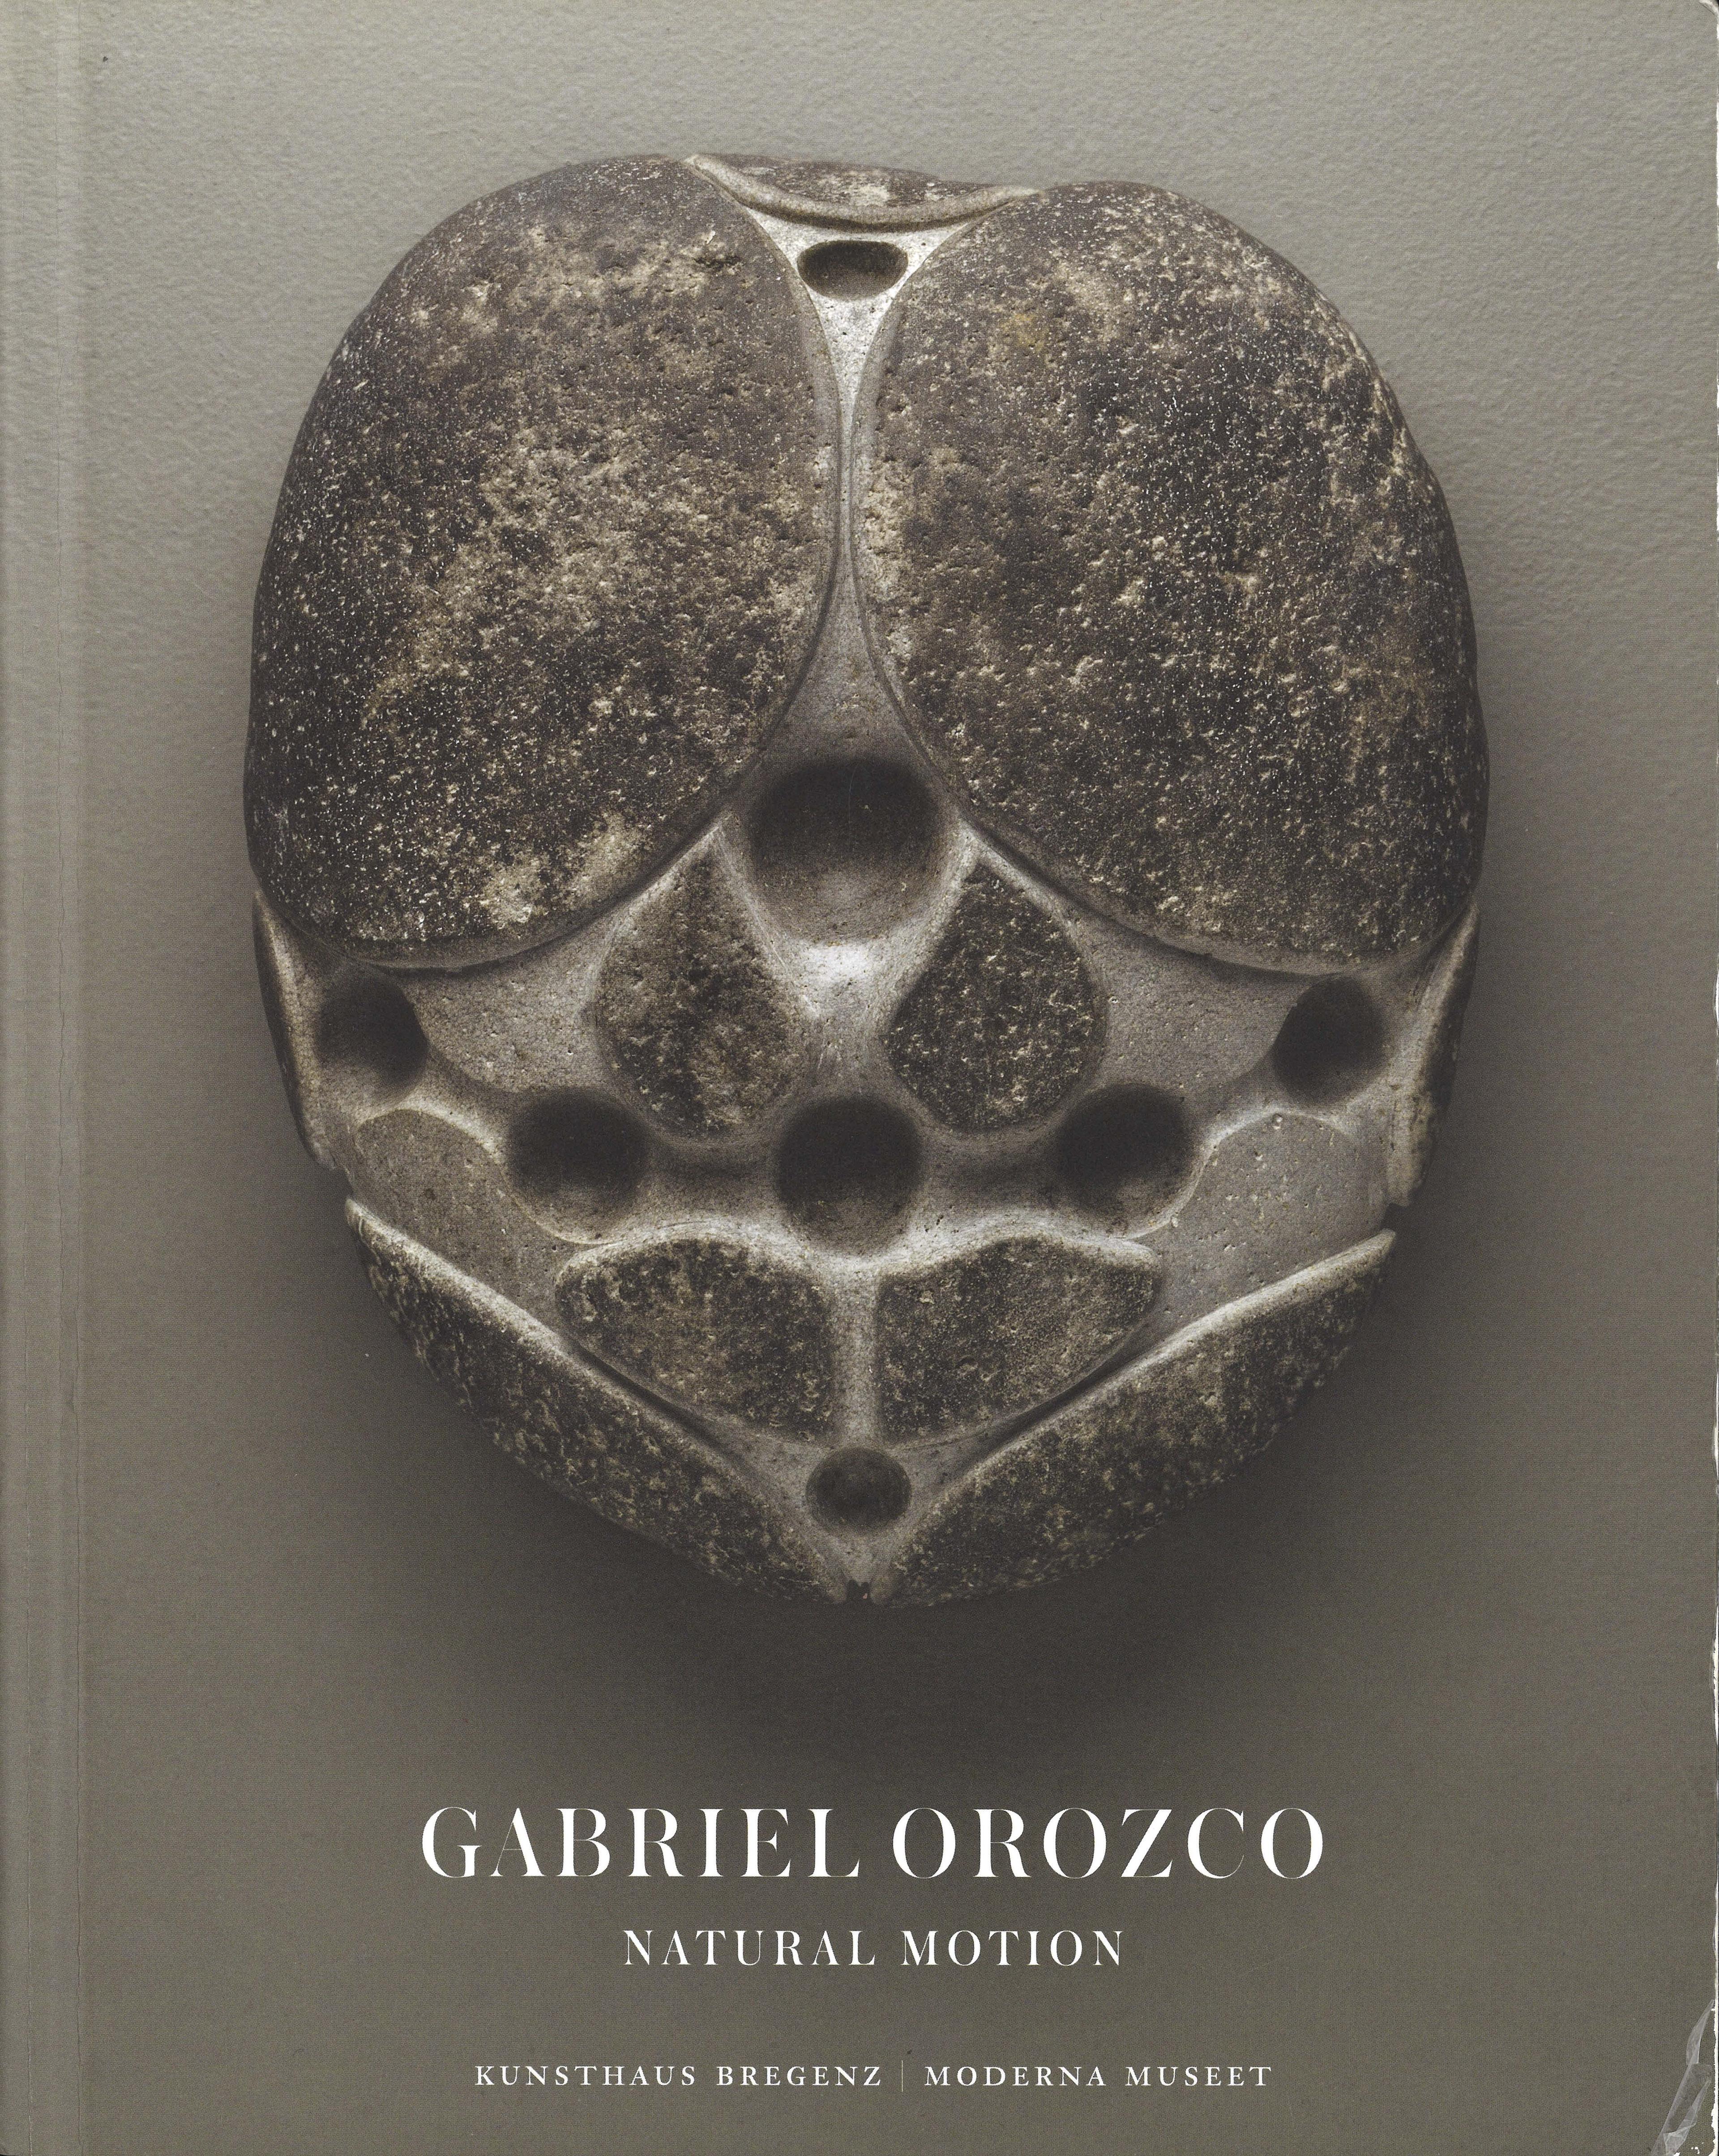 Lo-res image of Gabriel Orozco's works